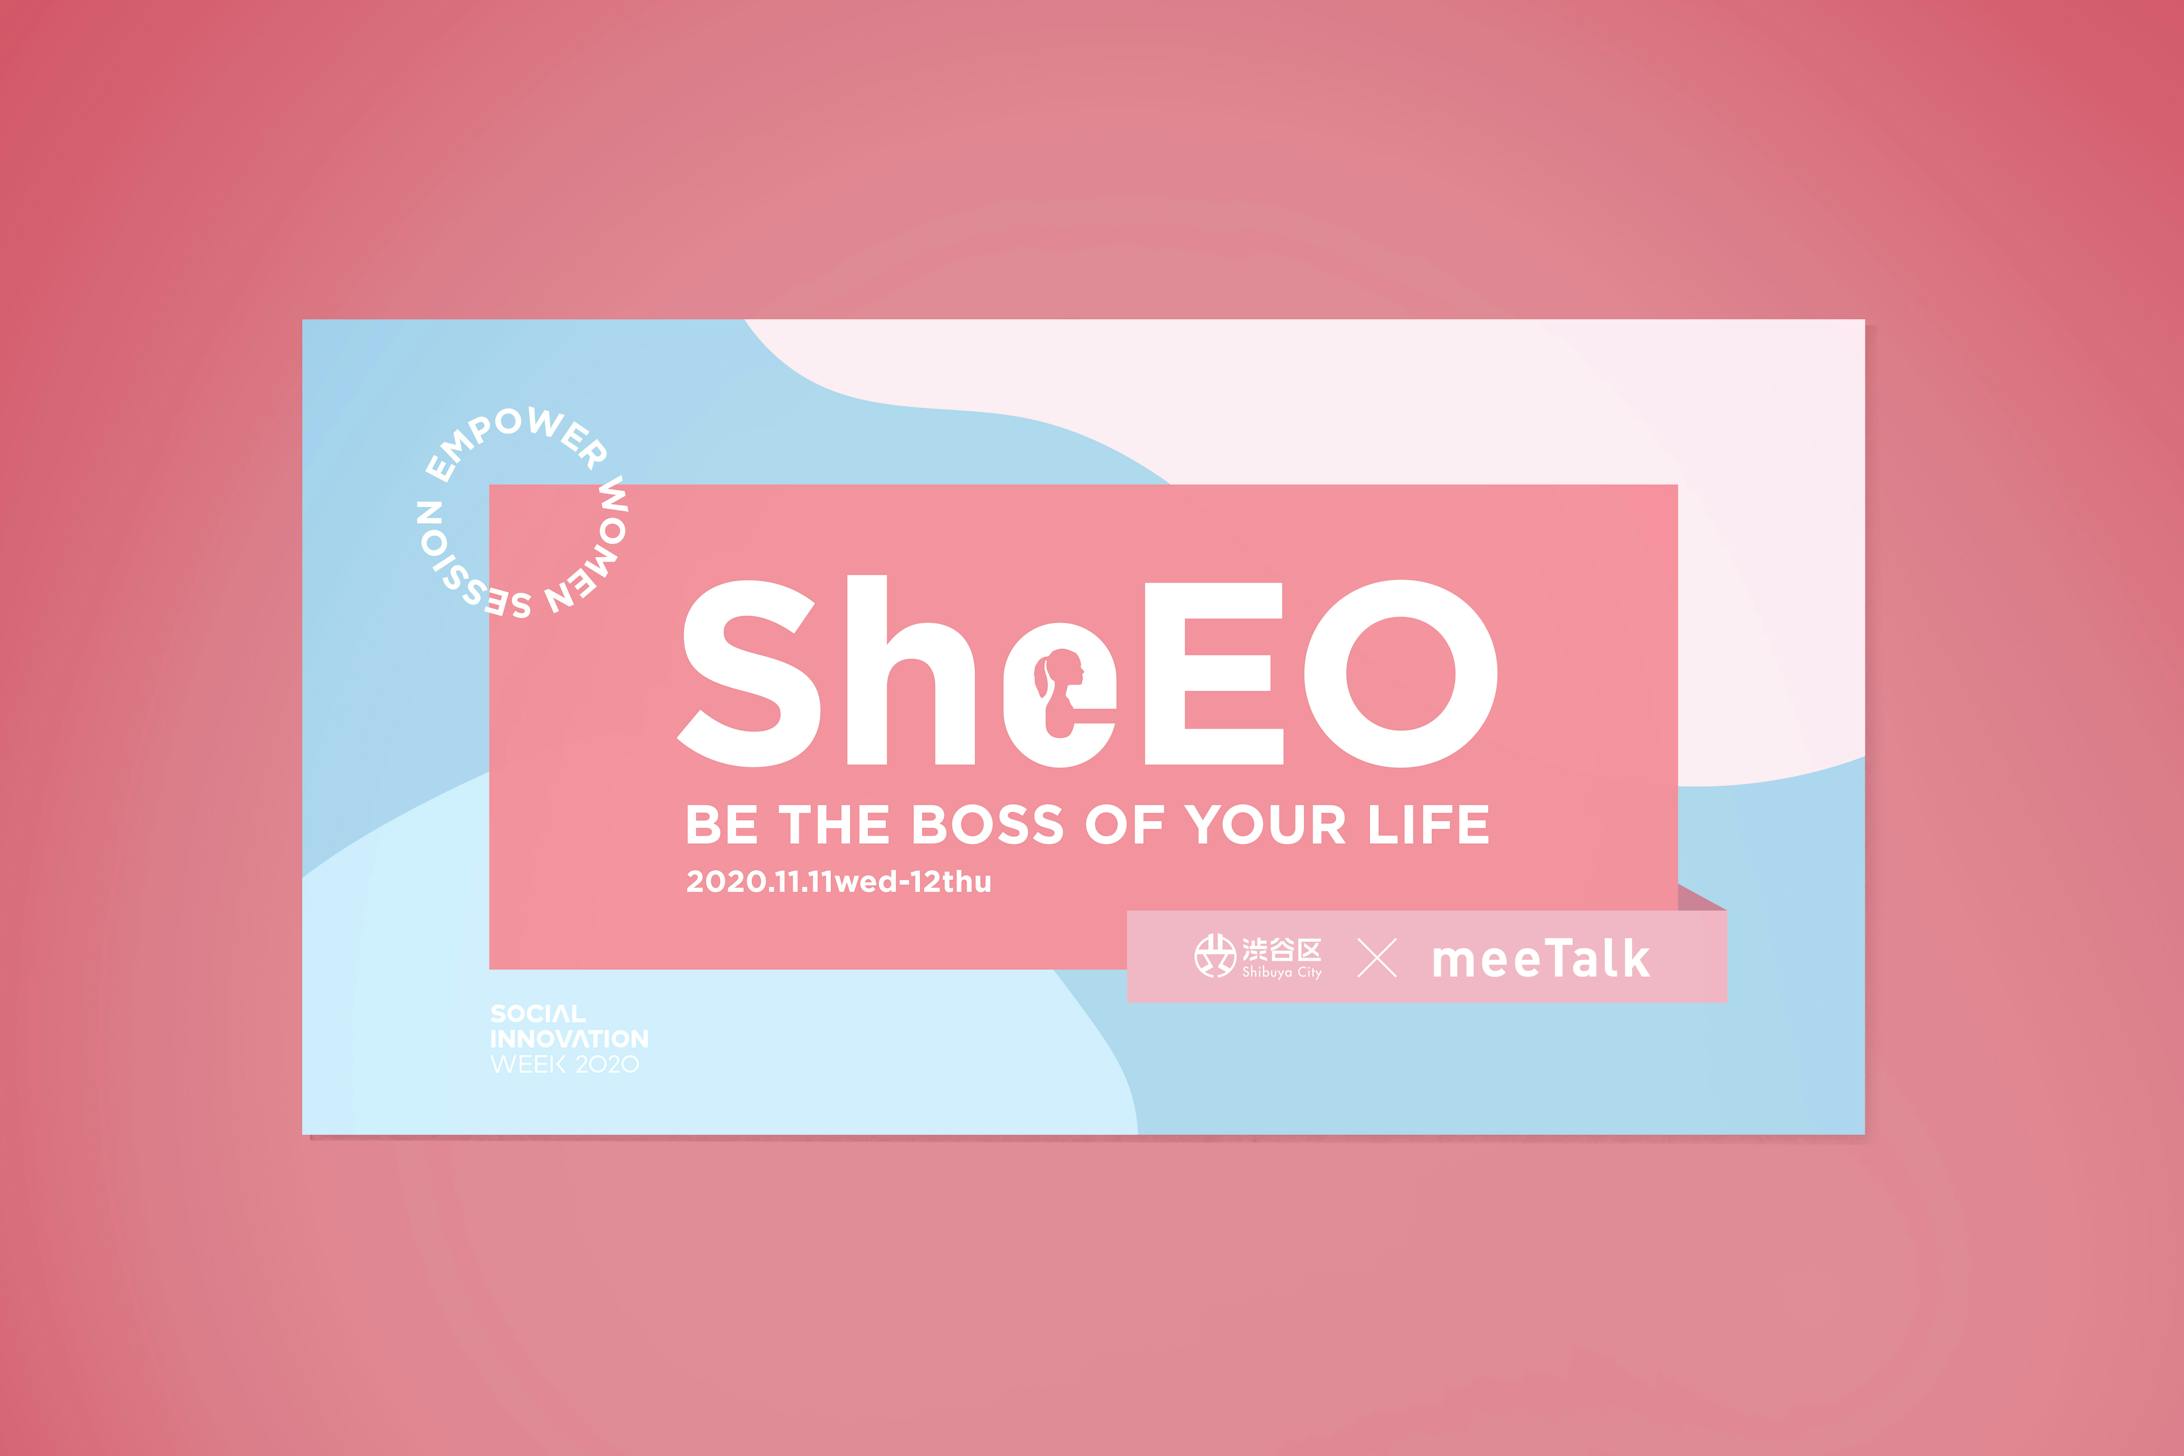 Shiubya-ku & meeTalk『SheEO – BE THE BOSS OF YOUR LIFE』-1